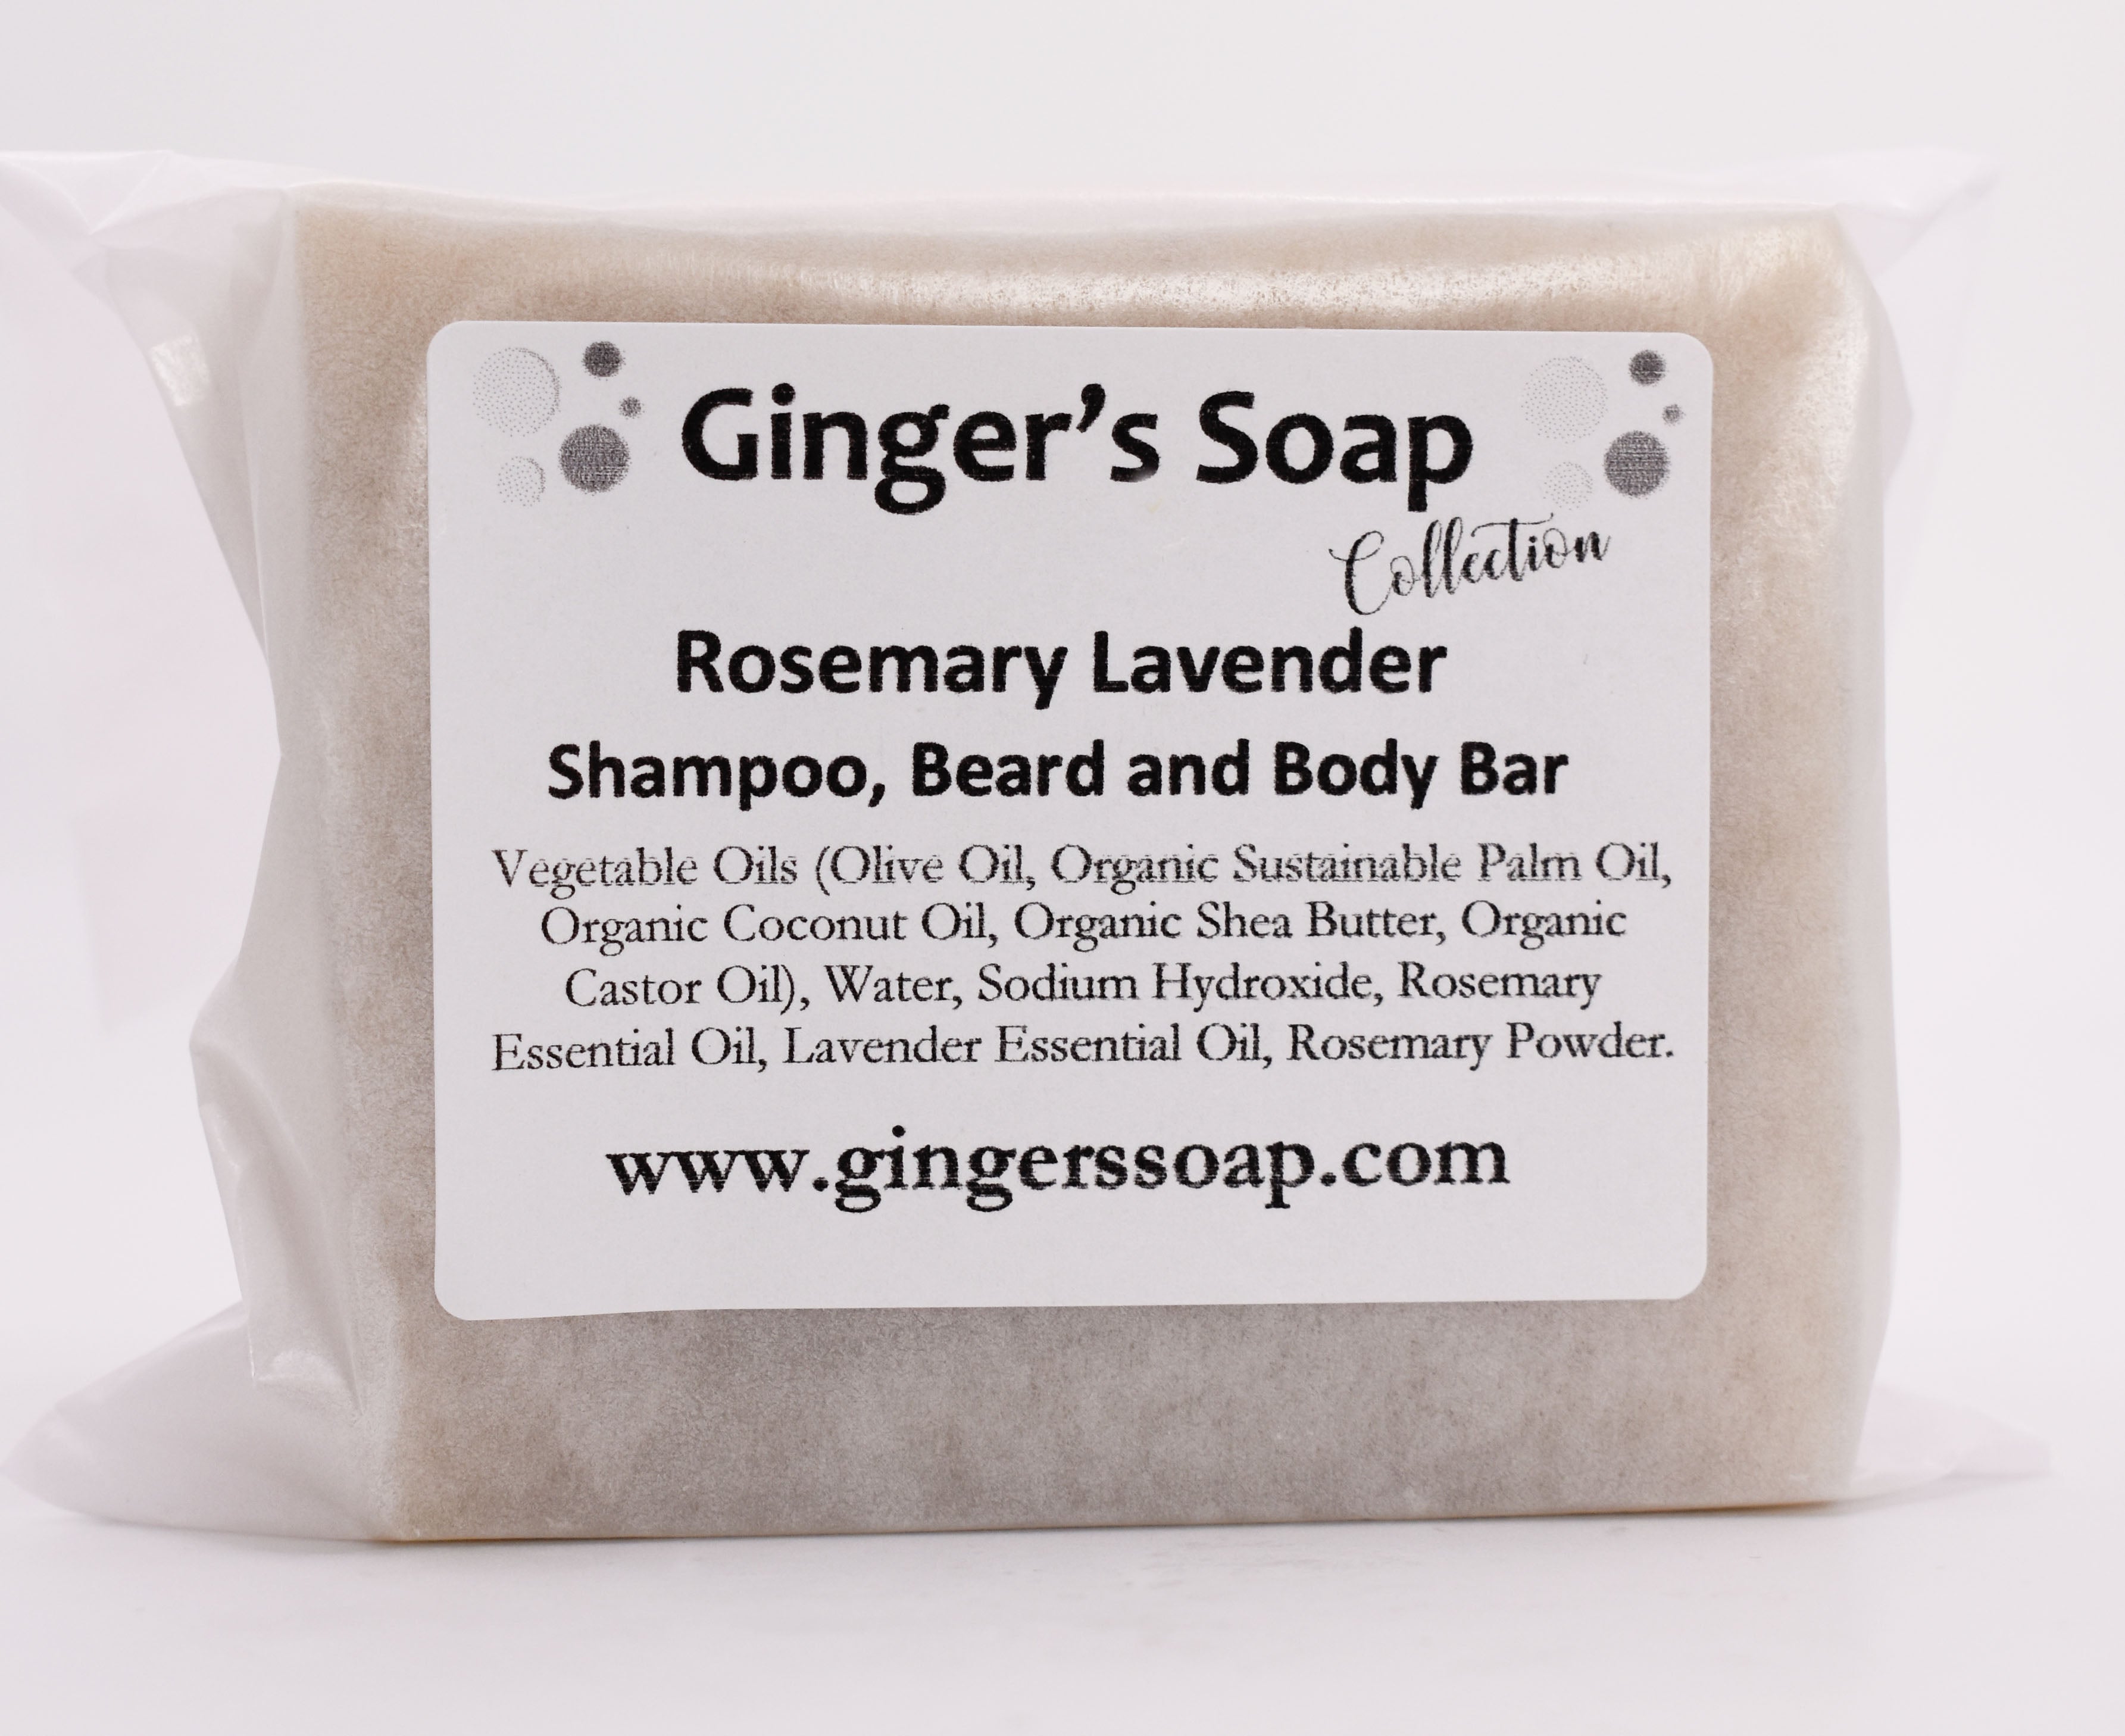 Rosemary Lavender Shampoo, Beard and Body Bar